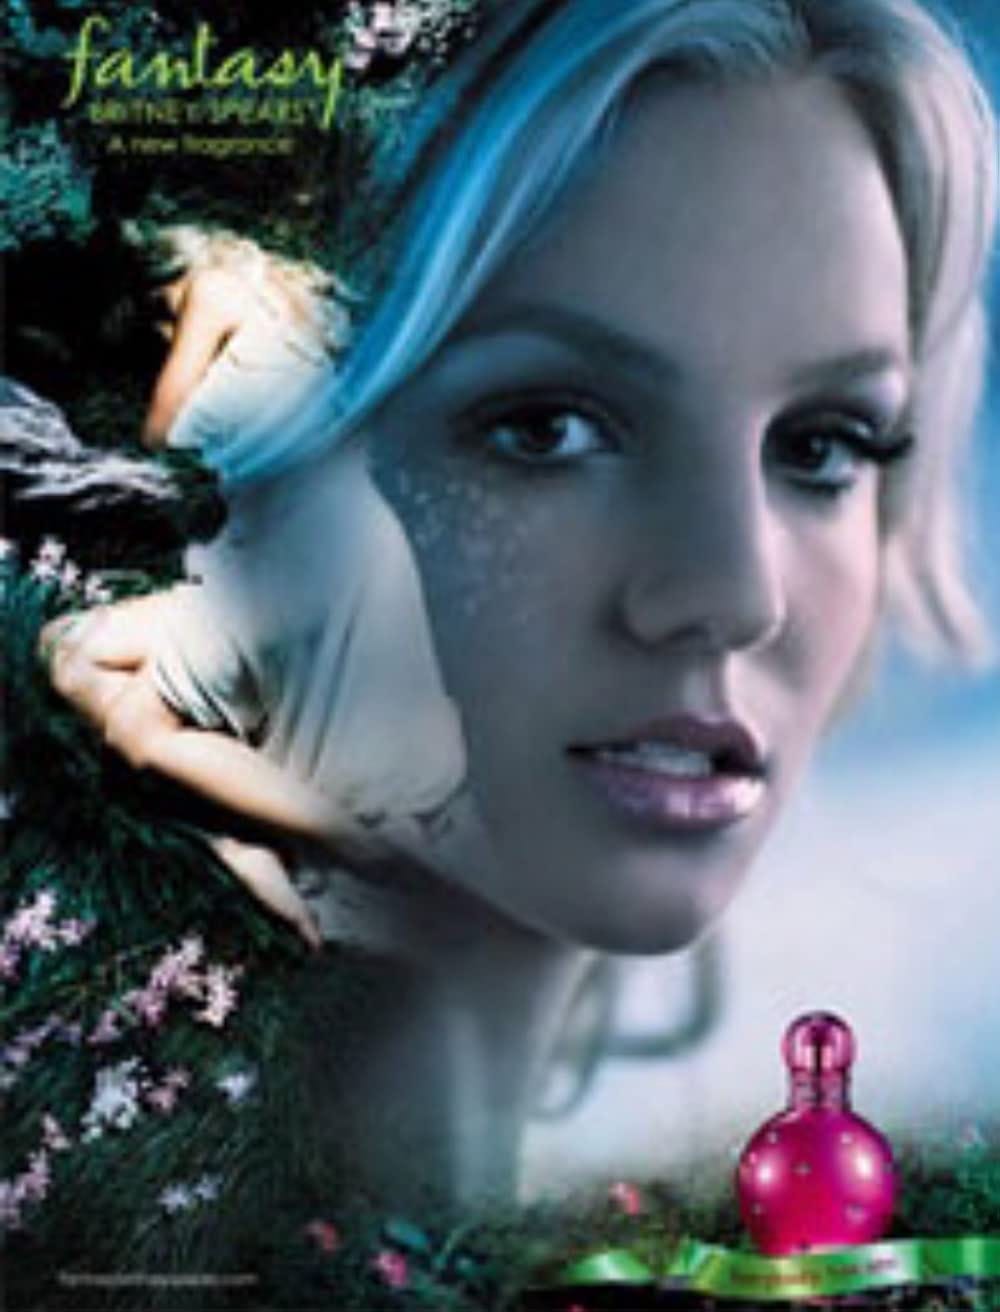 Britney Spears: Fantasy (Short 2004) - IMDb